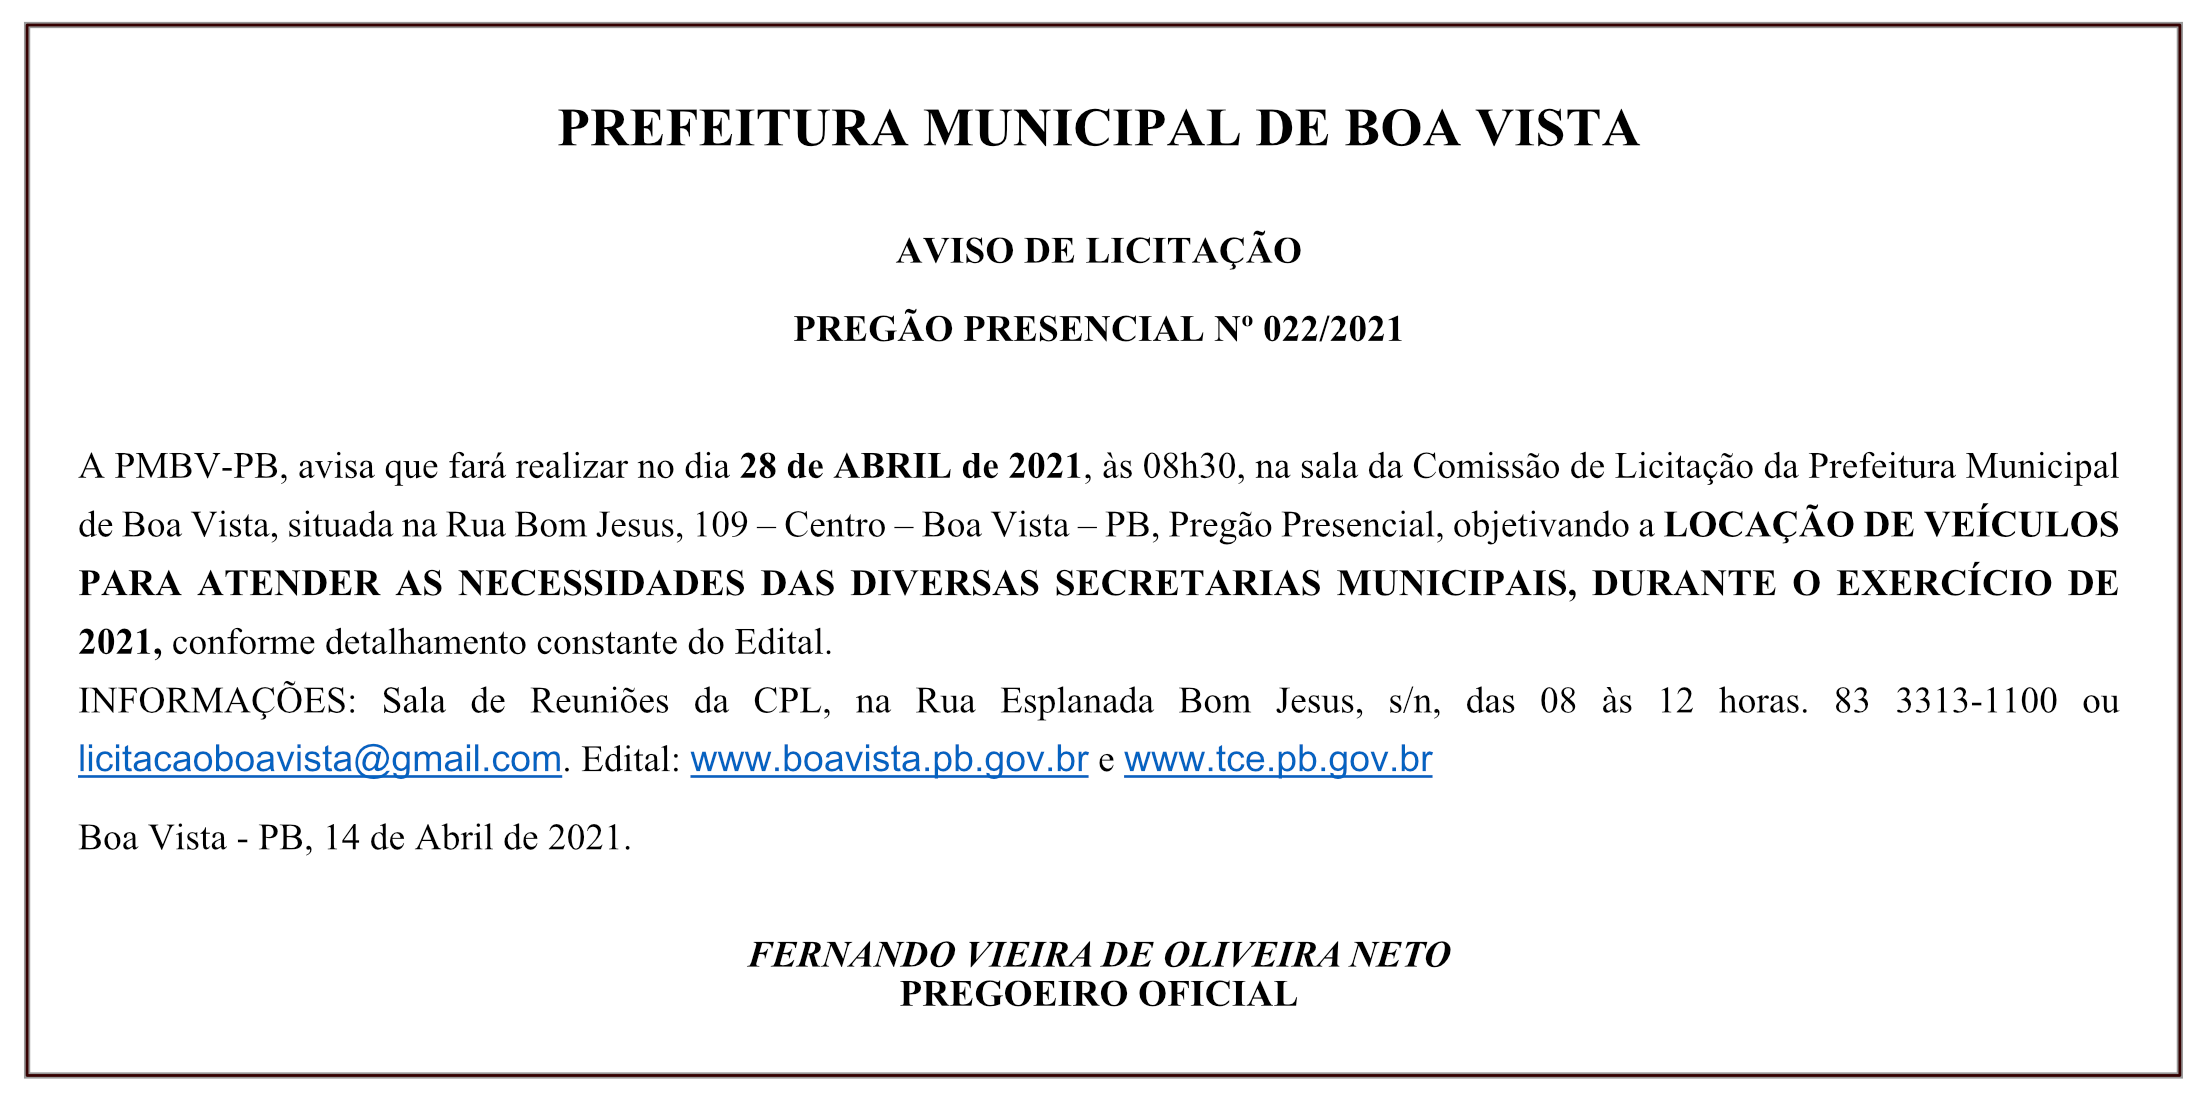 PREFEITURA MUNICIPAL DE BOA VISTA – AVISO DE LICITAÇÃO – PREGÃO PRESENCIAL Nº 022/2021